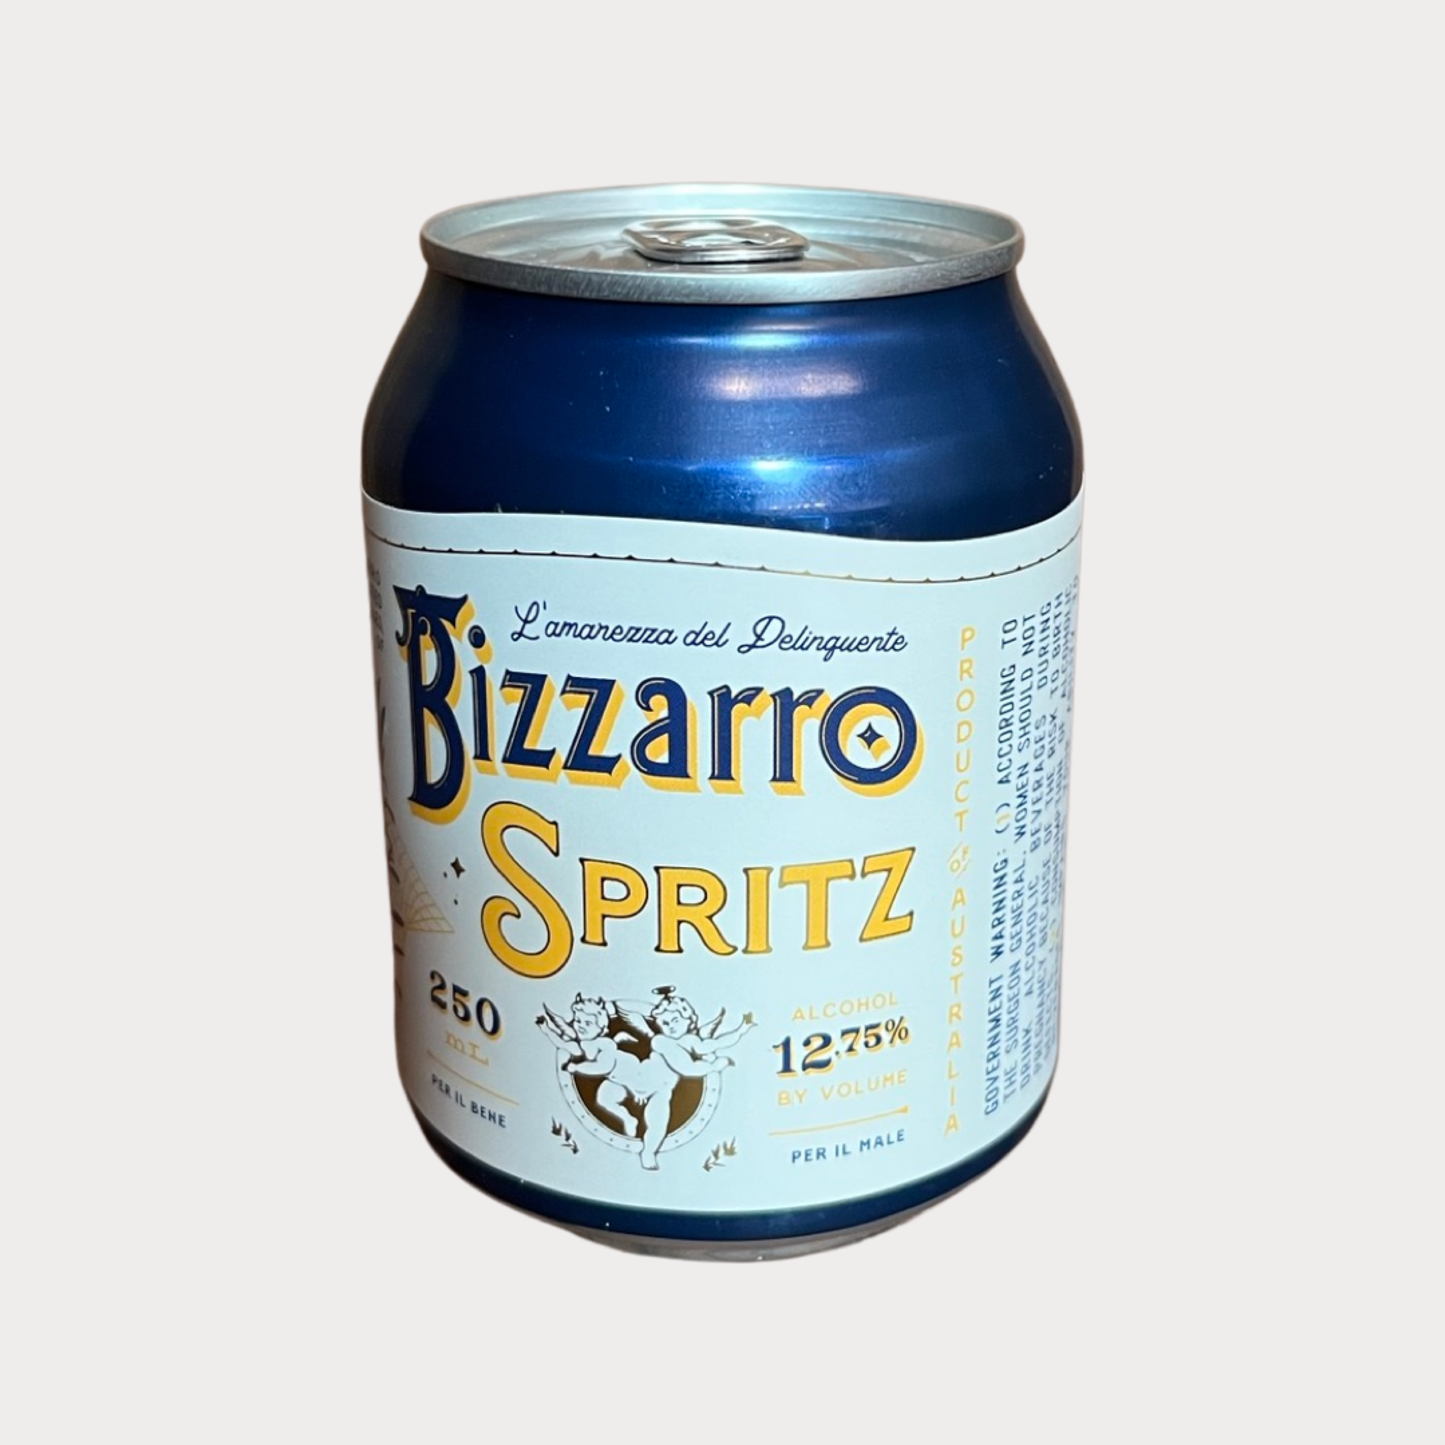 Bizzarro Spritz Can